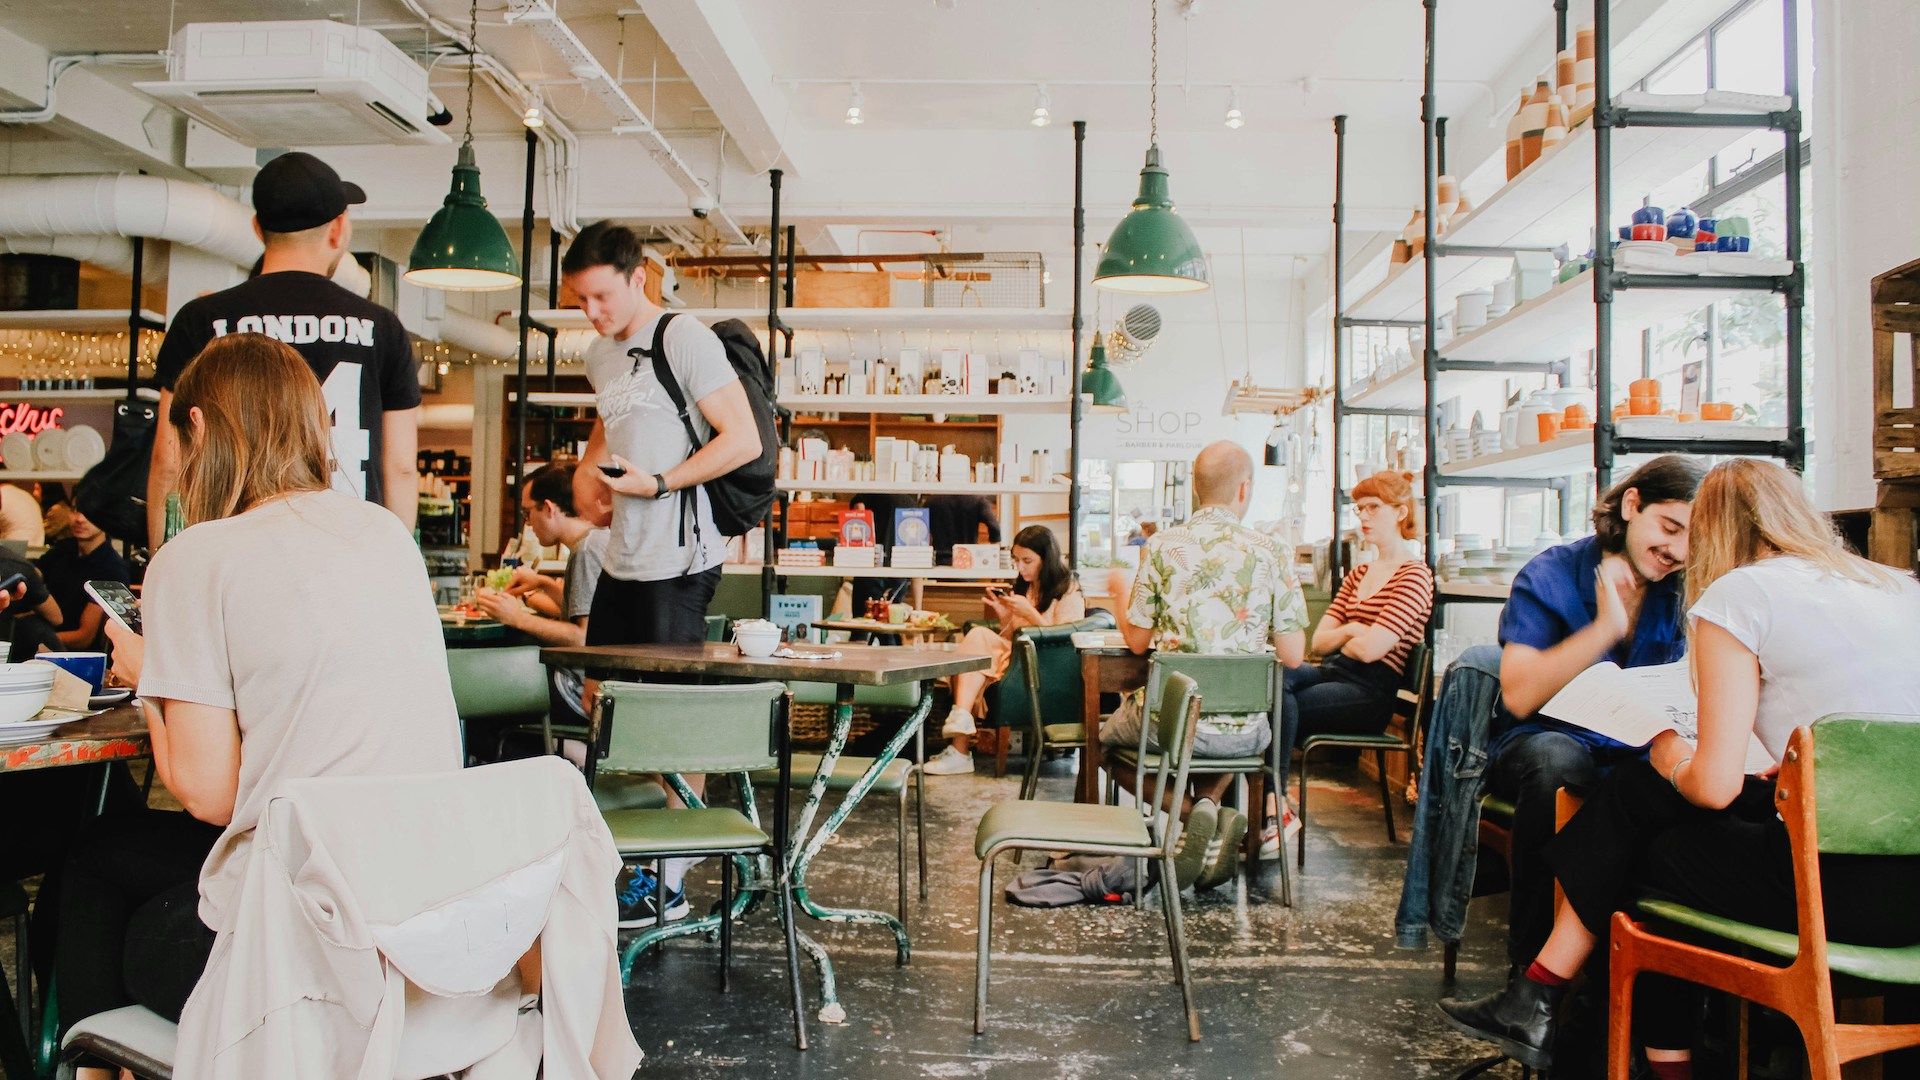 Café ähnlicher Raum in dem Menschen sitzen, arbeiten und sich unterhalten